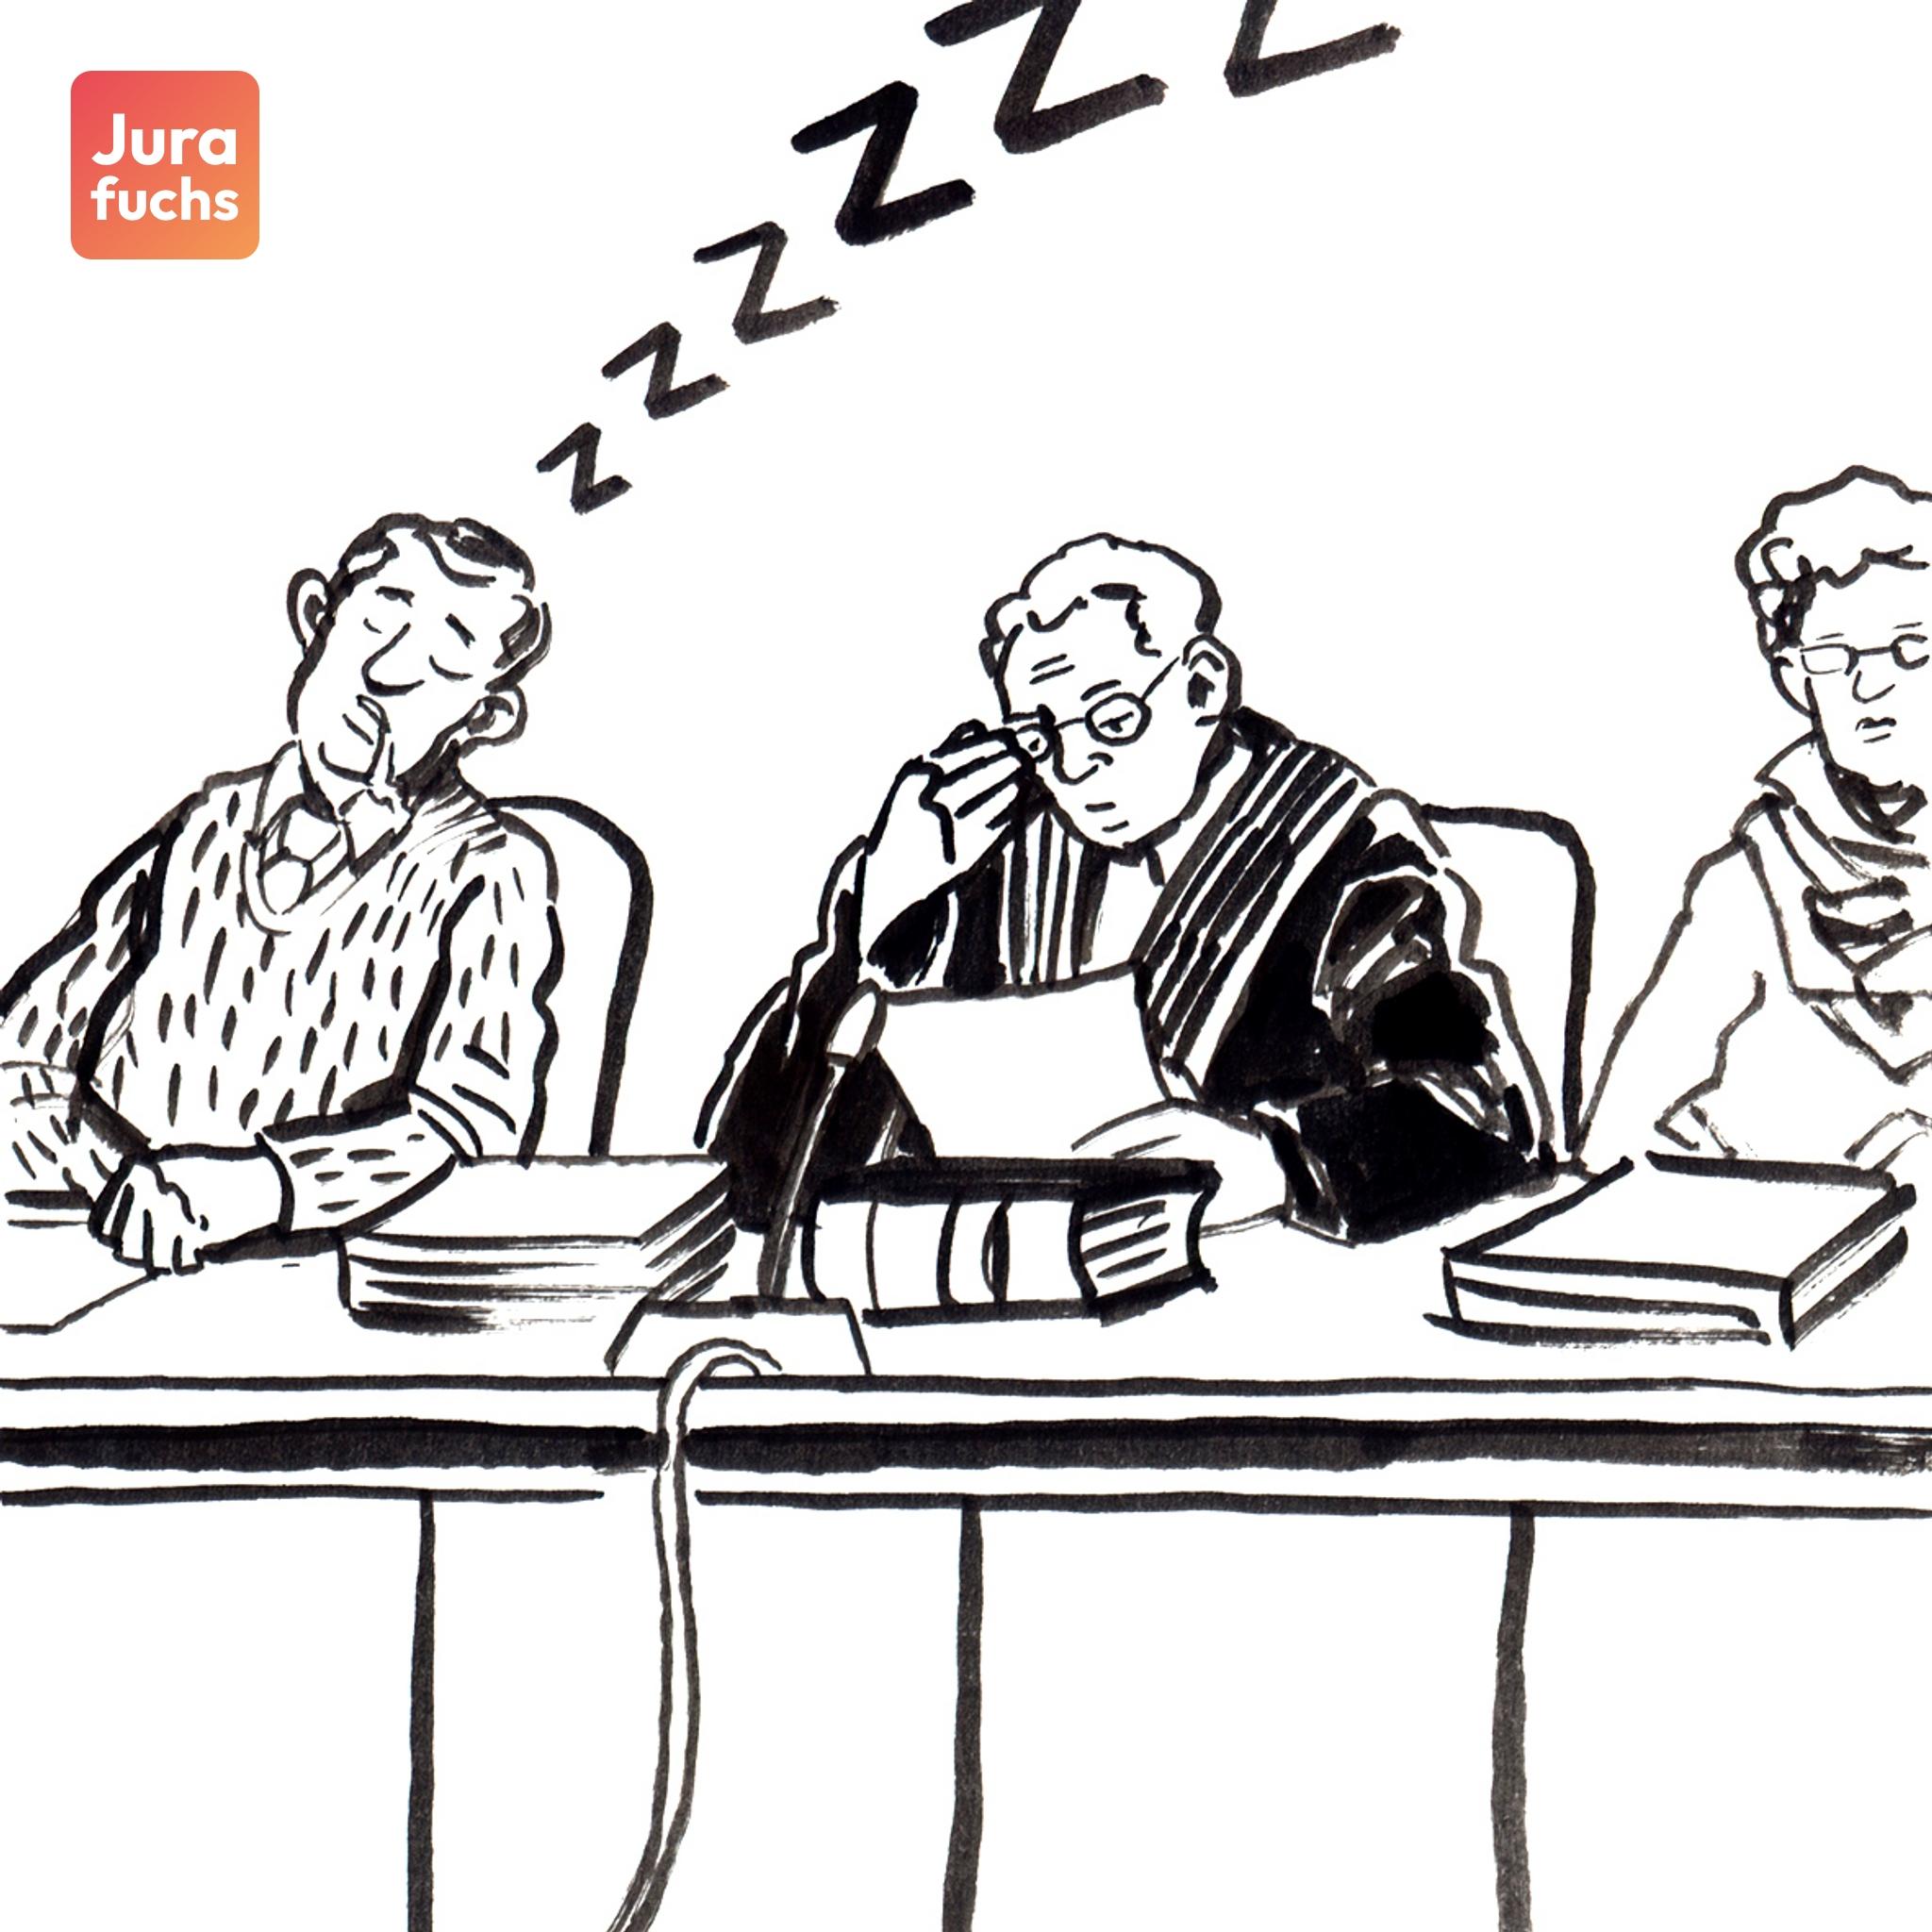 Jurafuchs Illustration: Auf der Richerbank eines Gerichtssaals sitzt neben dem Richter ein Schalfender Schöffe. 